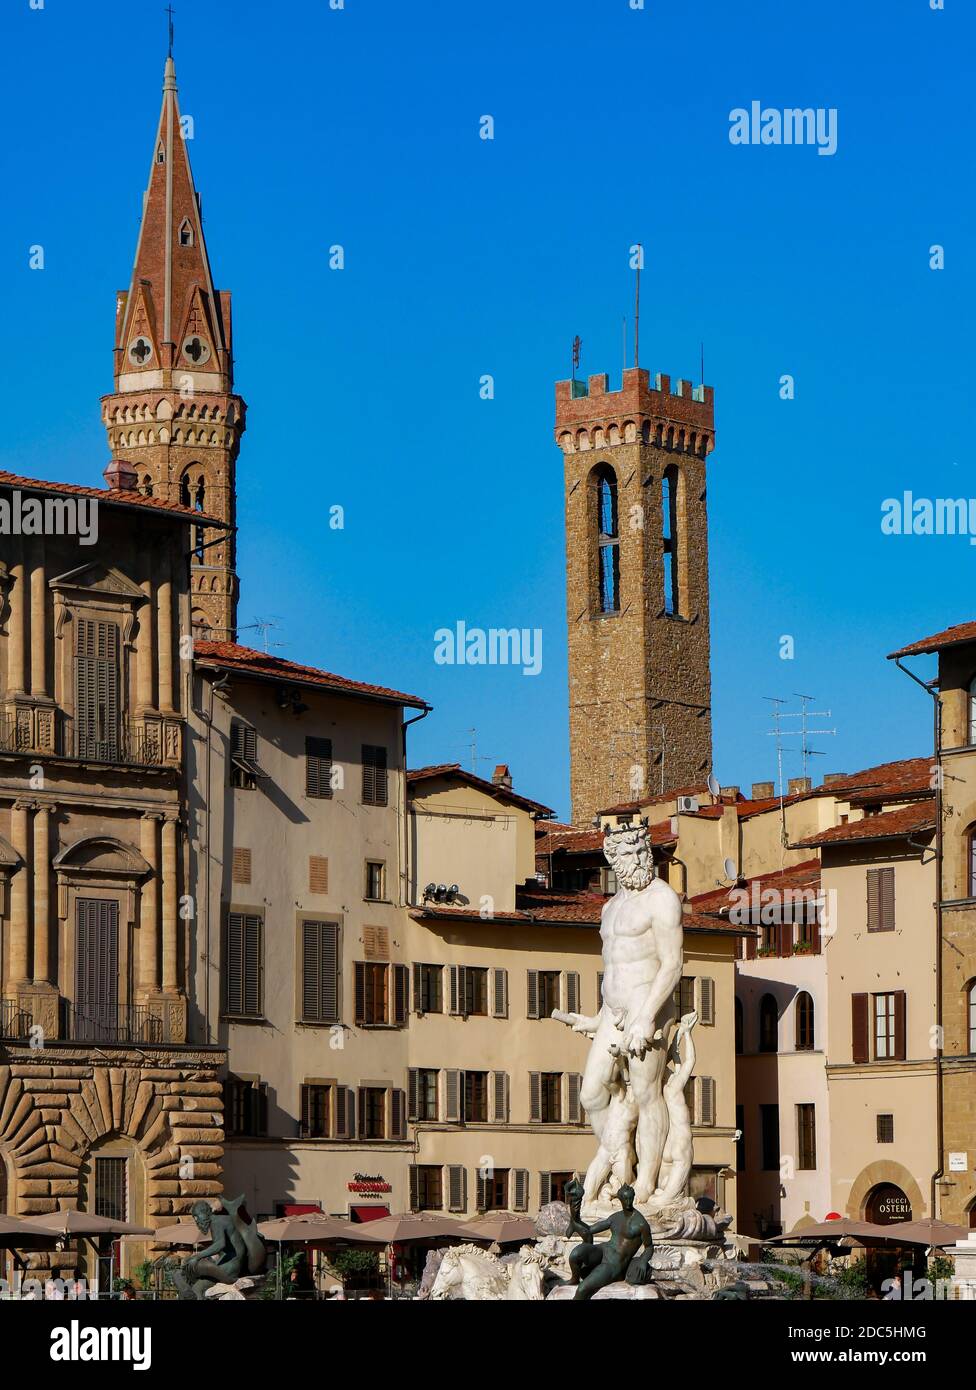 Statue of Neptune by Bartolomeo Ammannati 1565, in the Piazza della Signoria, Florence, Italy Stock Photo